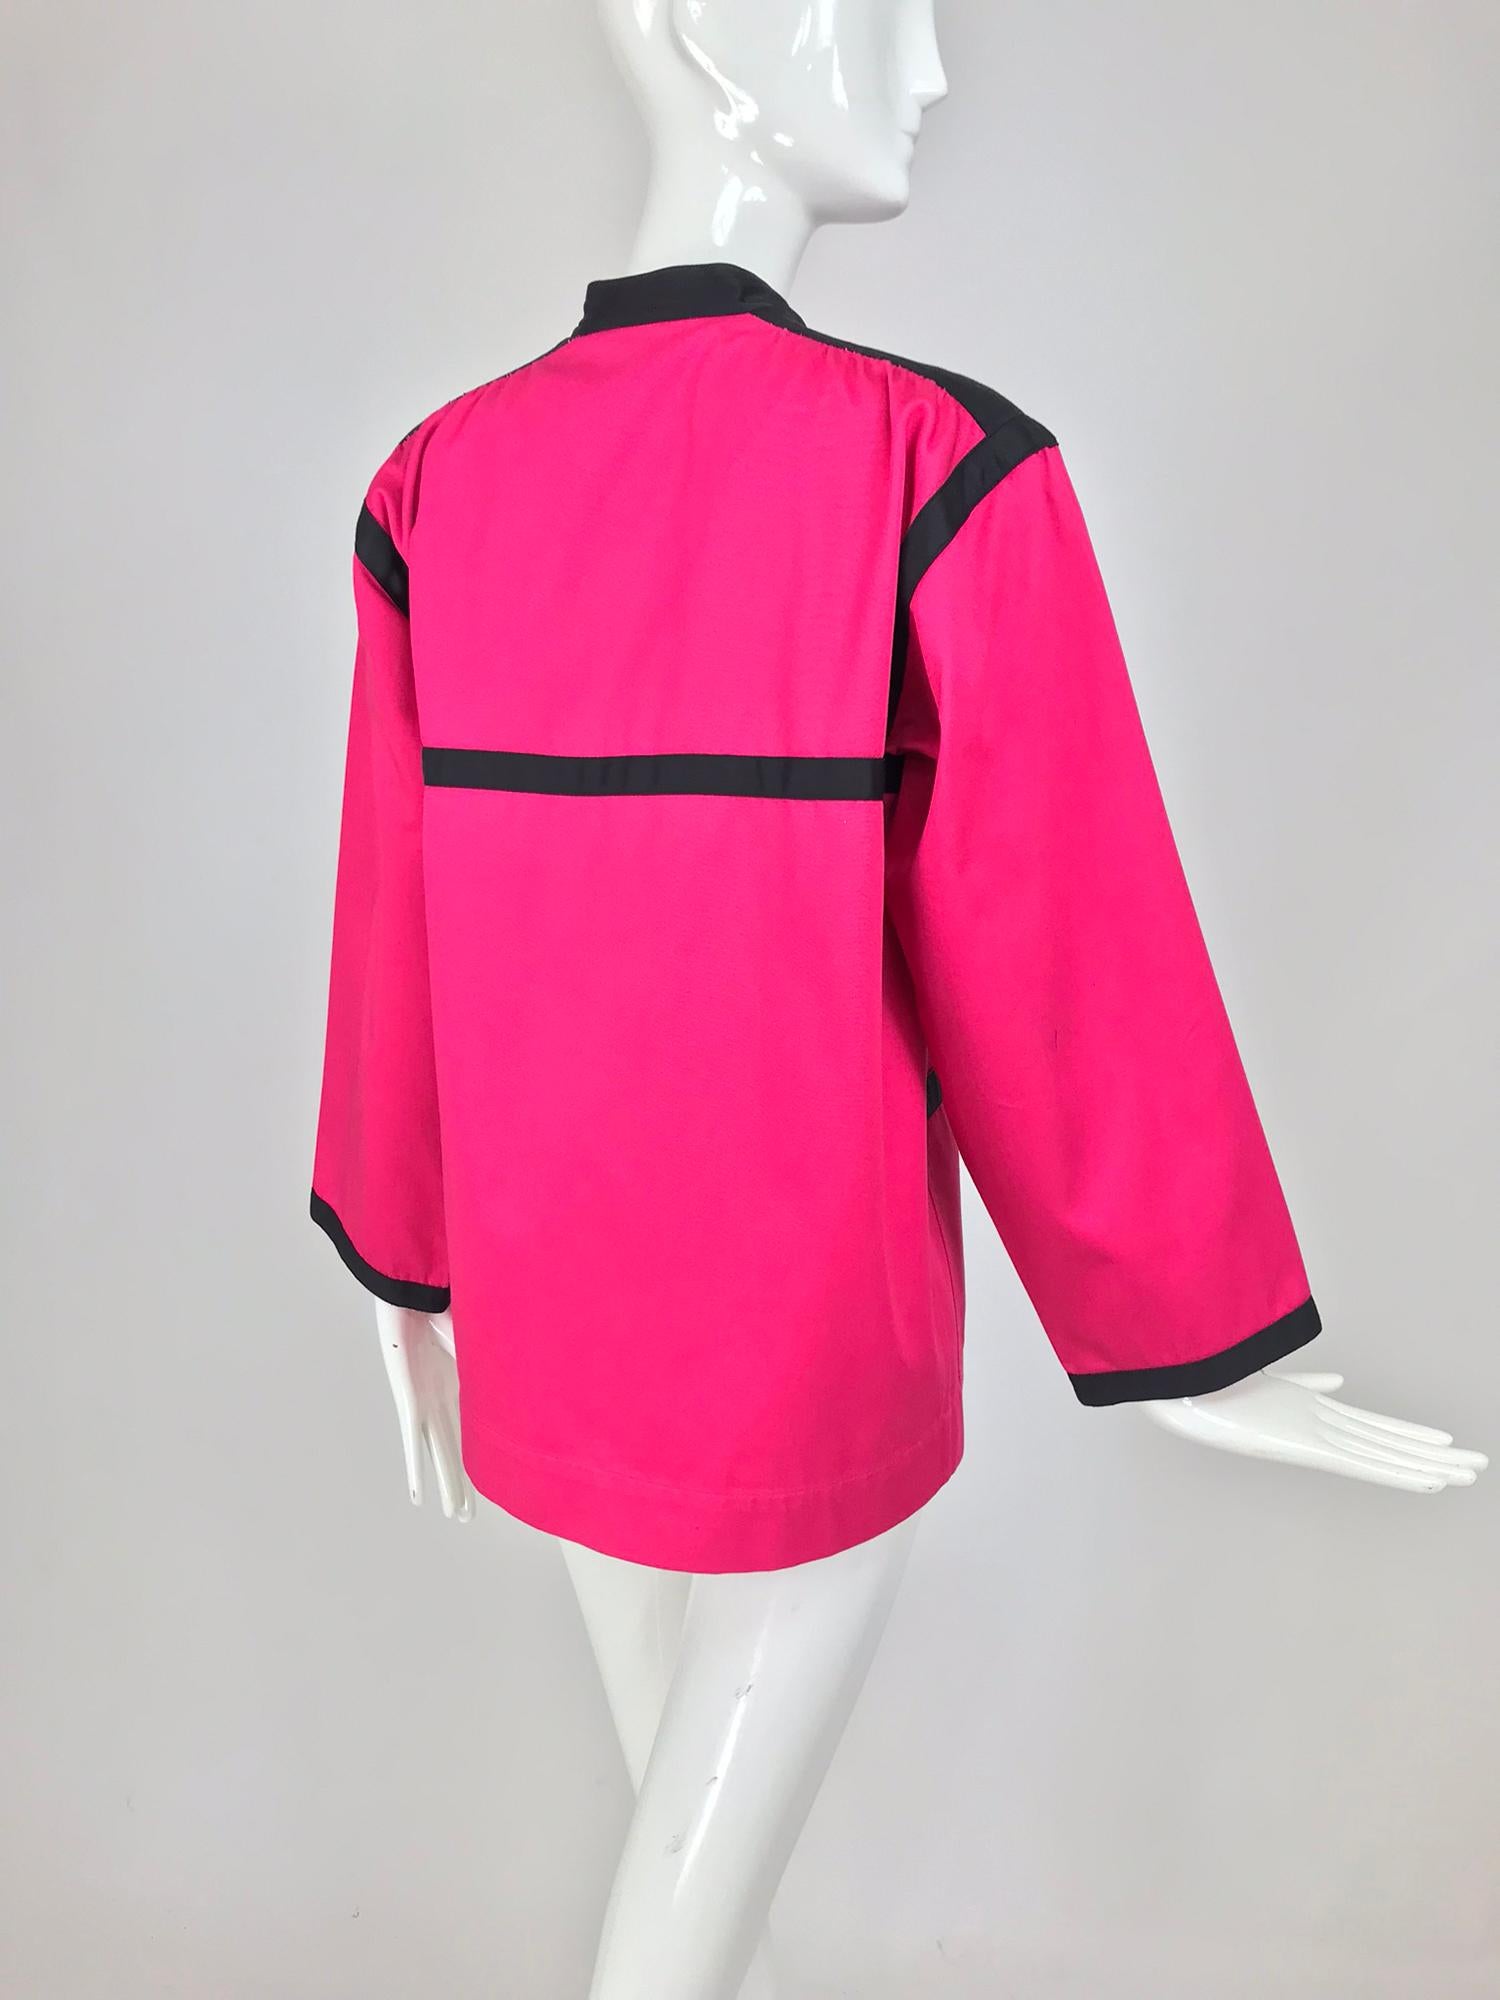 Yves Saint Laurent Hot Pink Colour Block Jacket 1970s For Sale 1